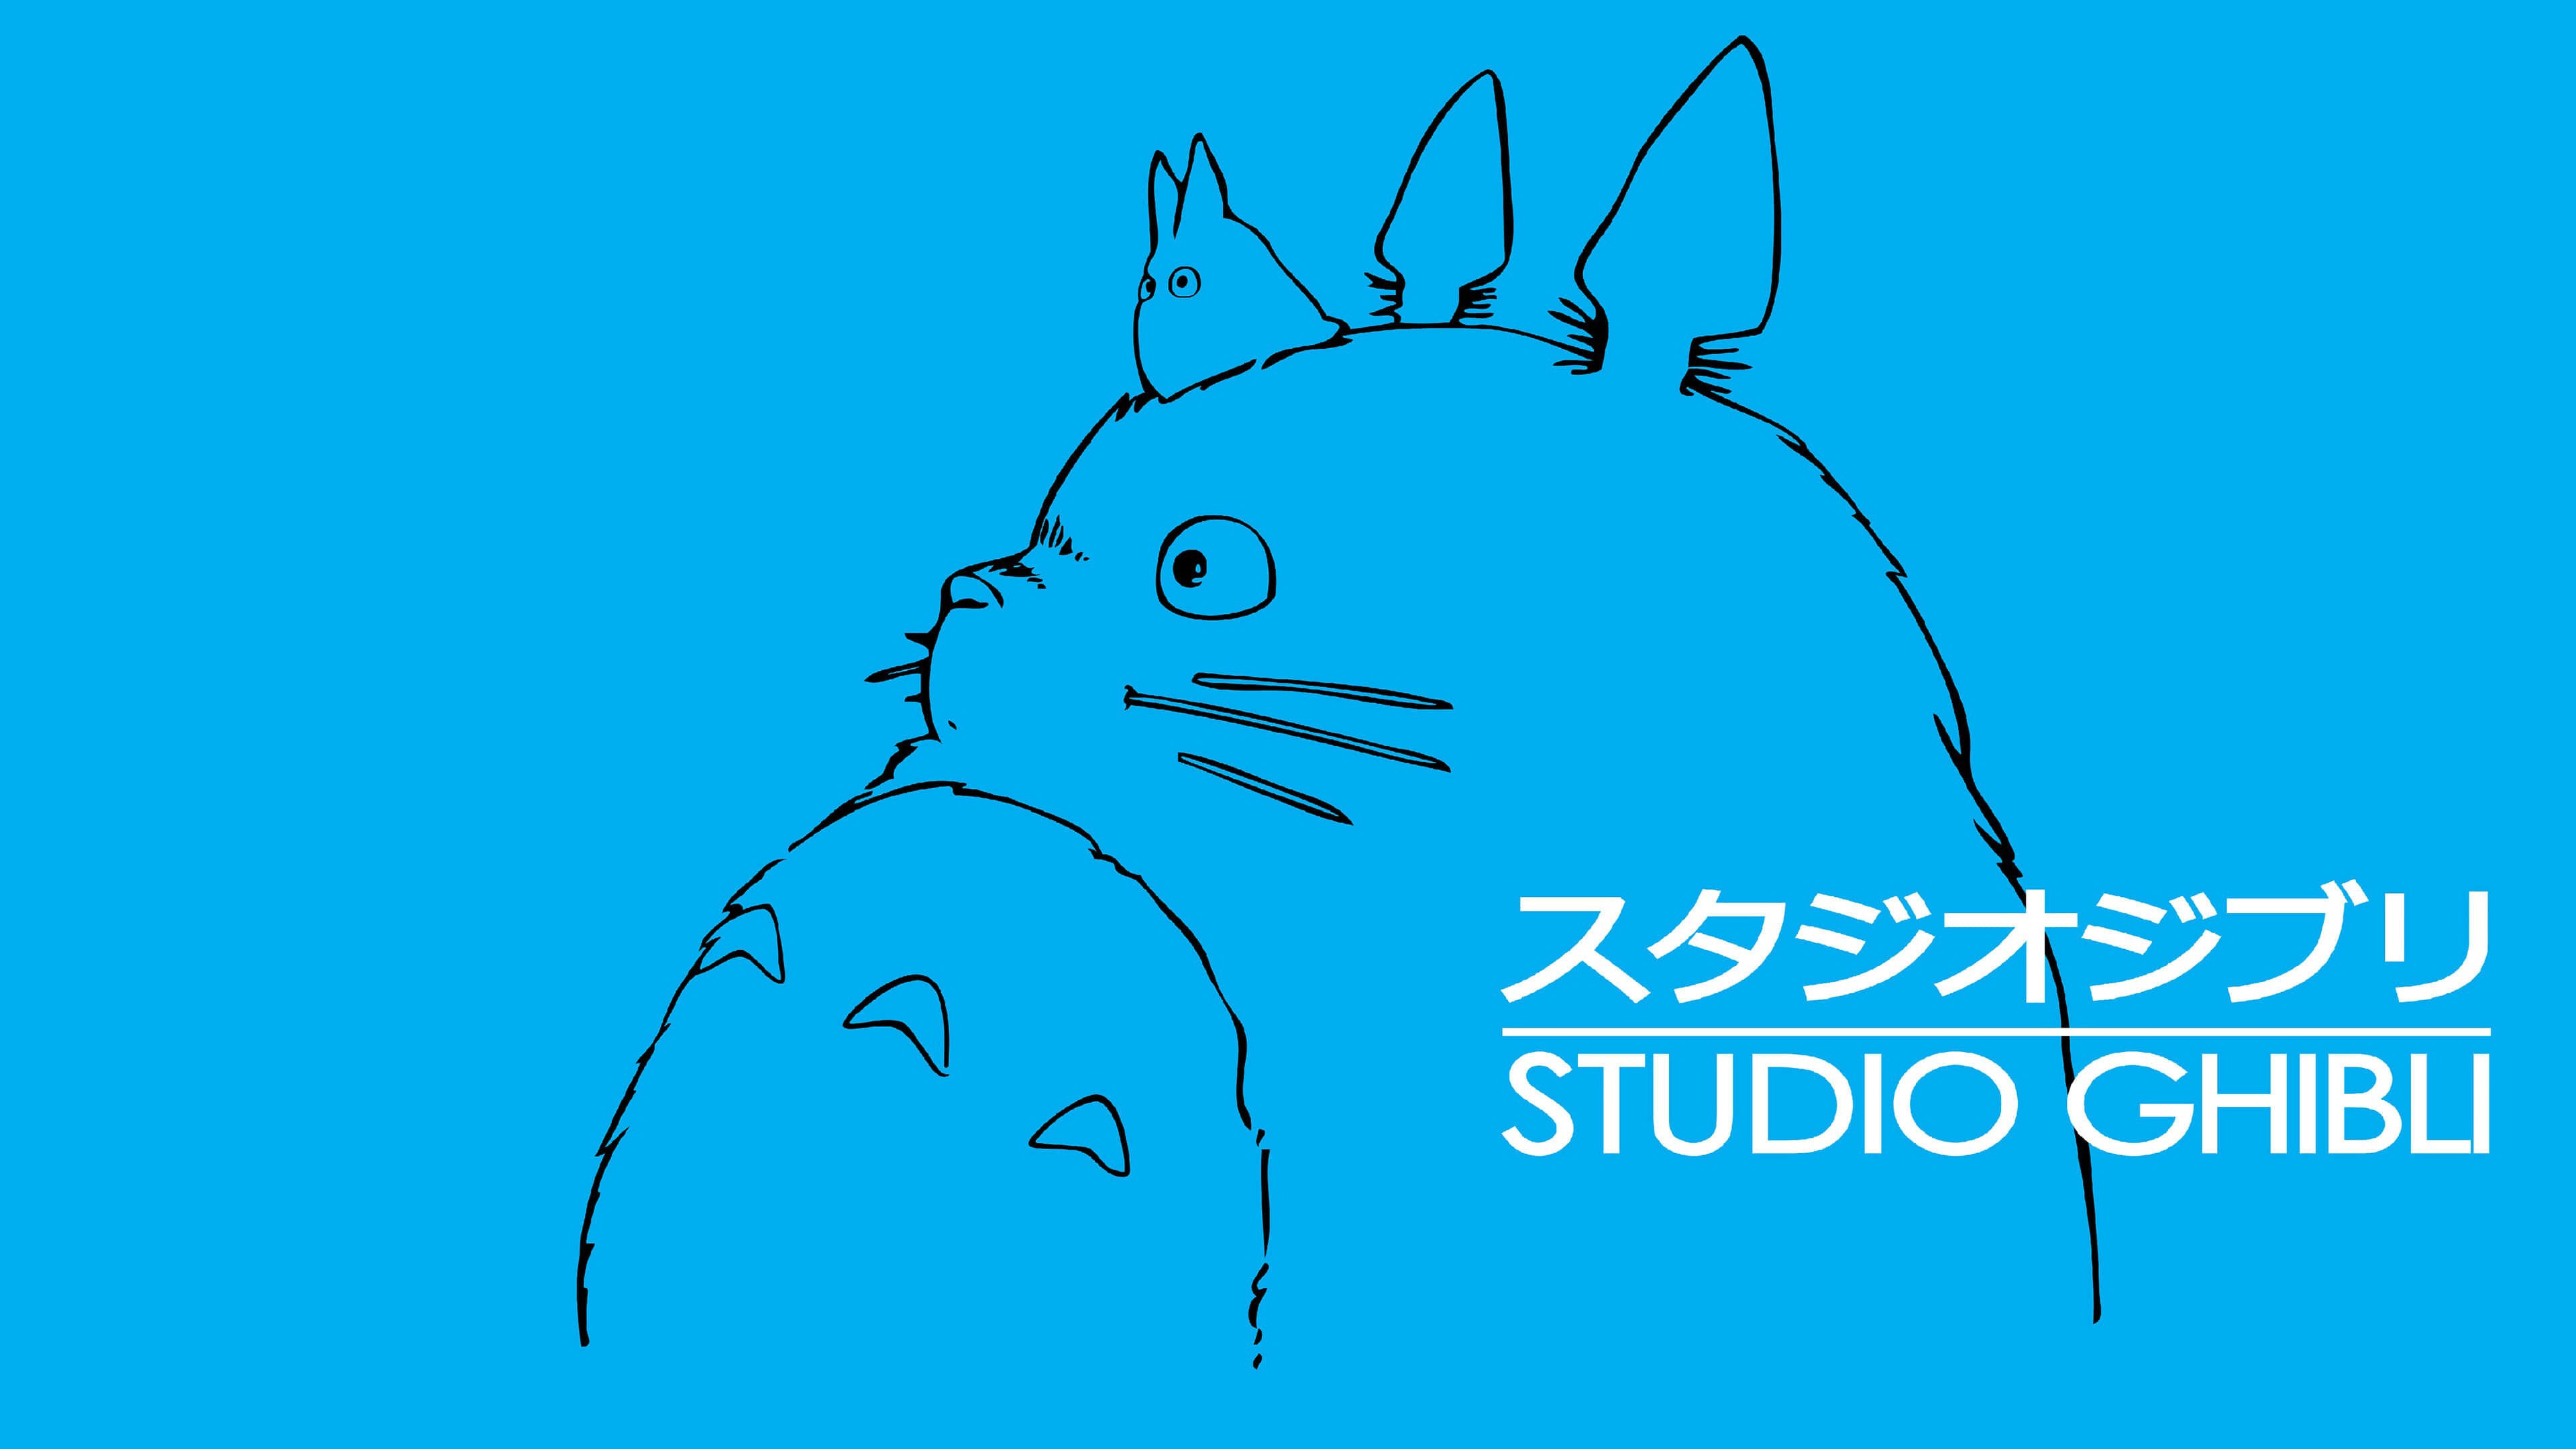 Studio Ghibli: My Neighbor Totoro, Written and directed by Hayao Miyazaki. 3840x2160 4K Background.